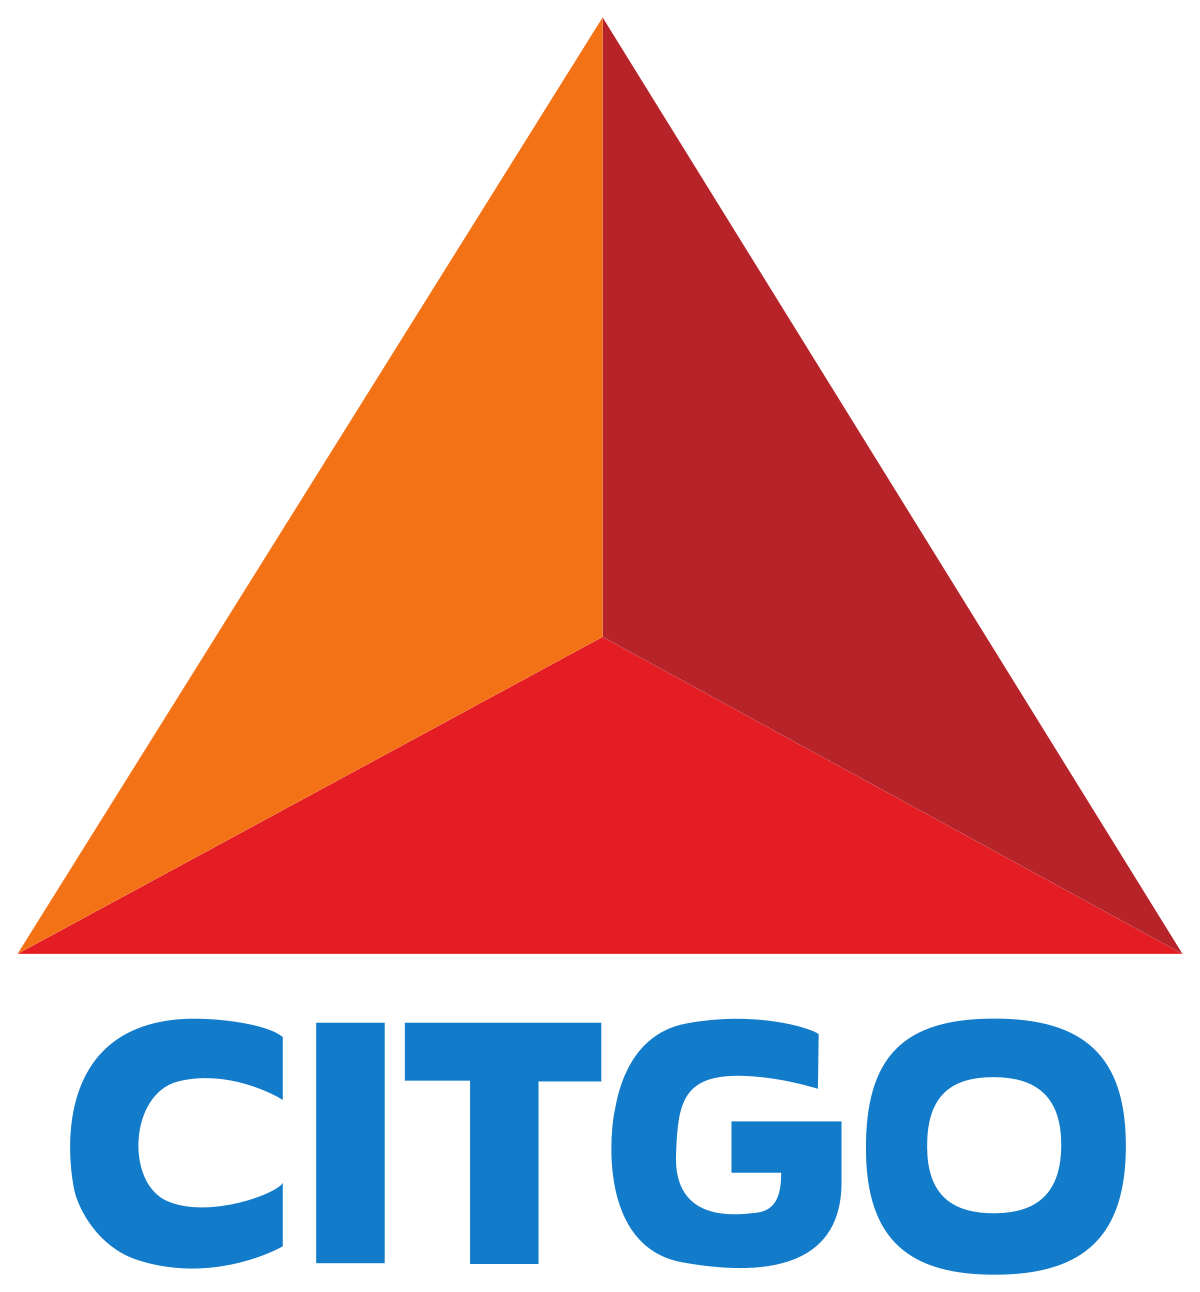 Citgo Logo - Citgo